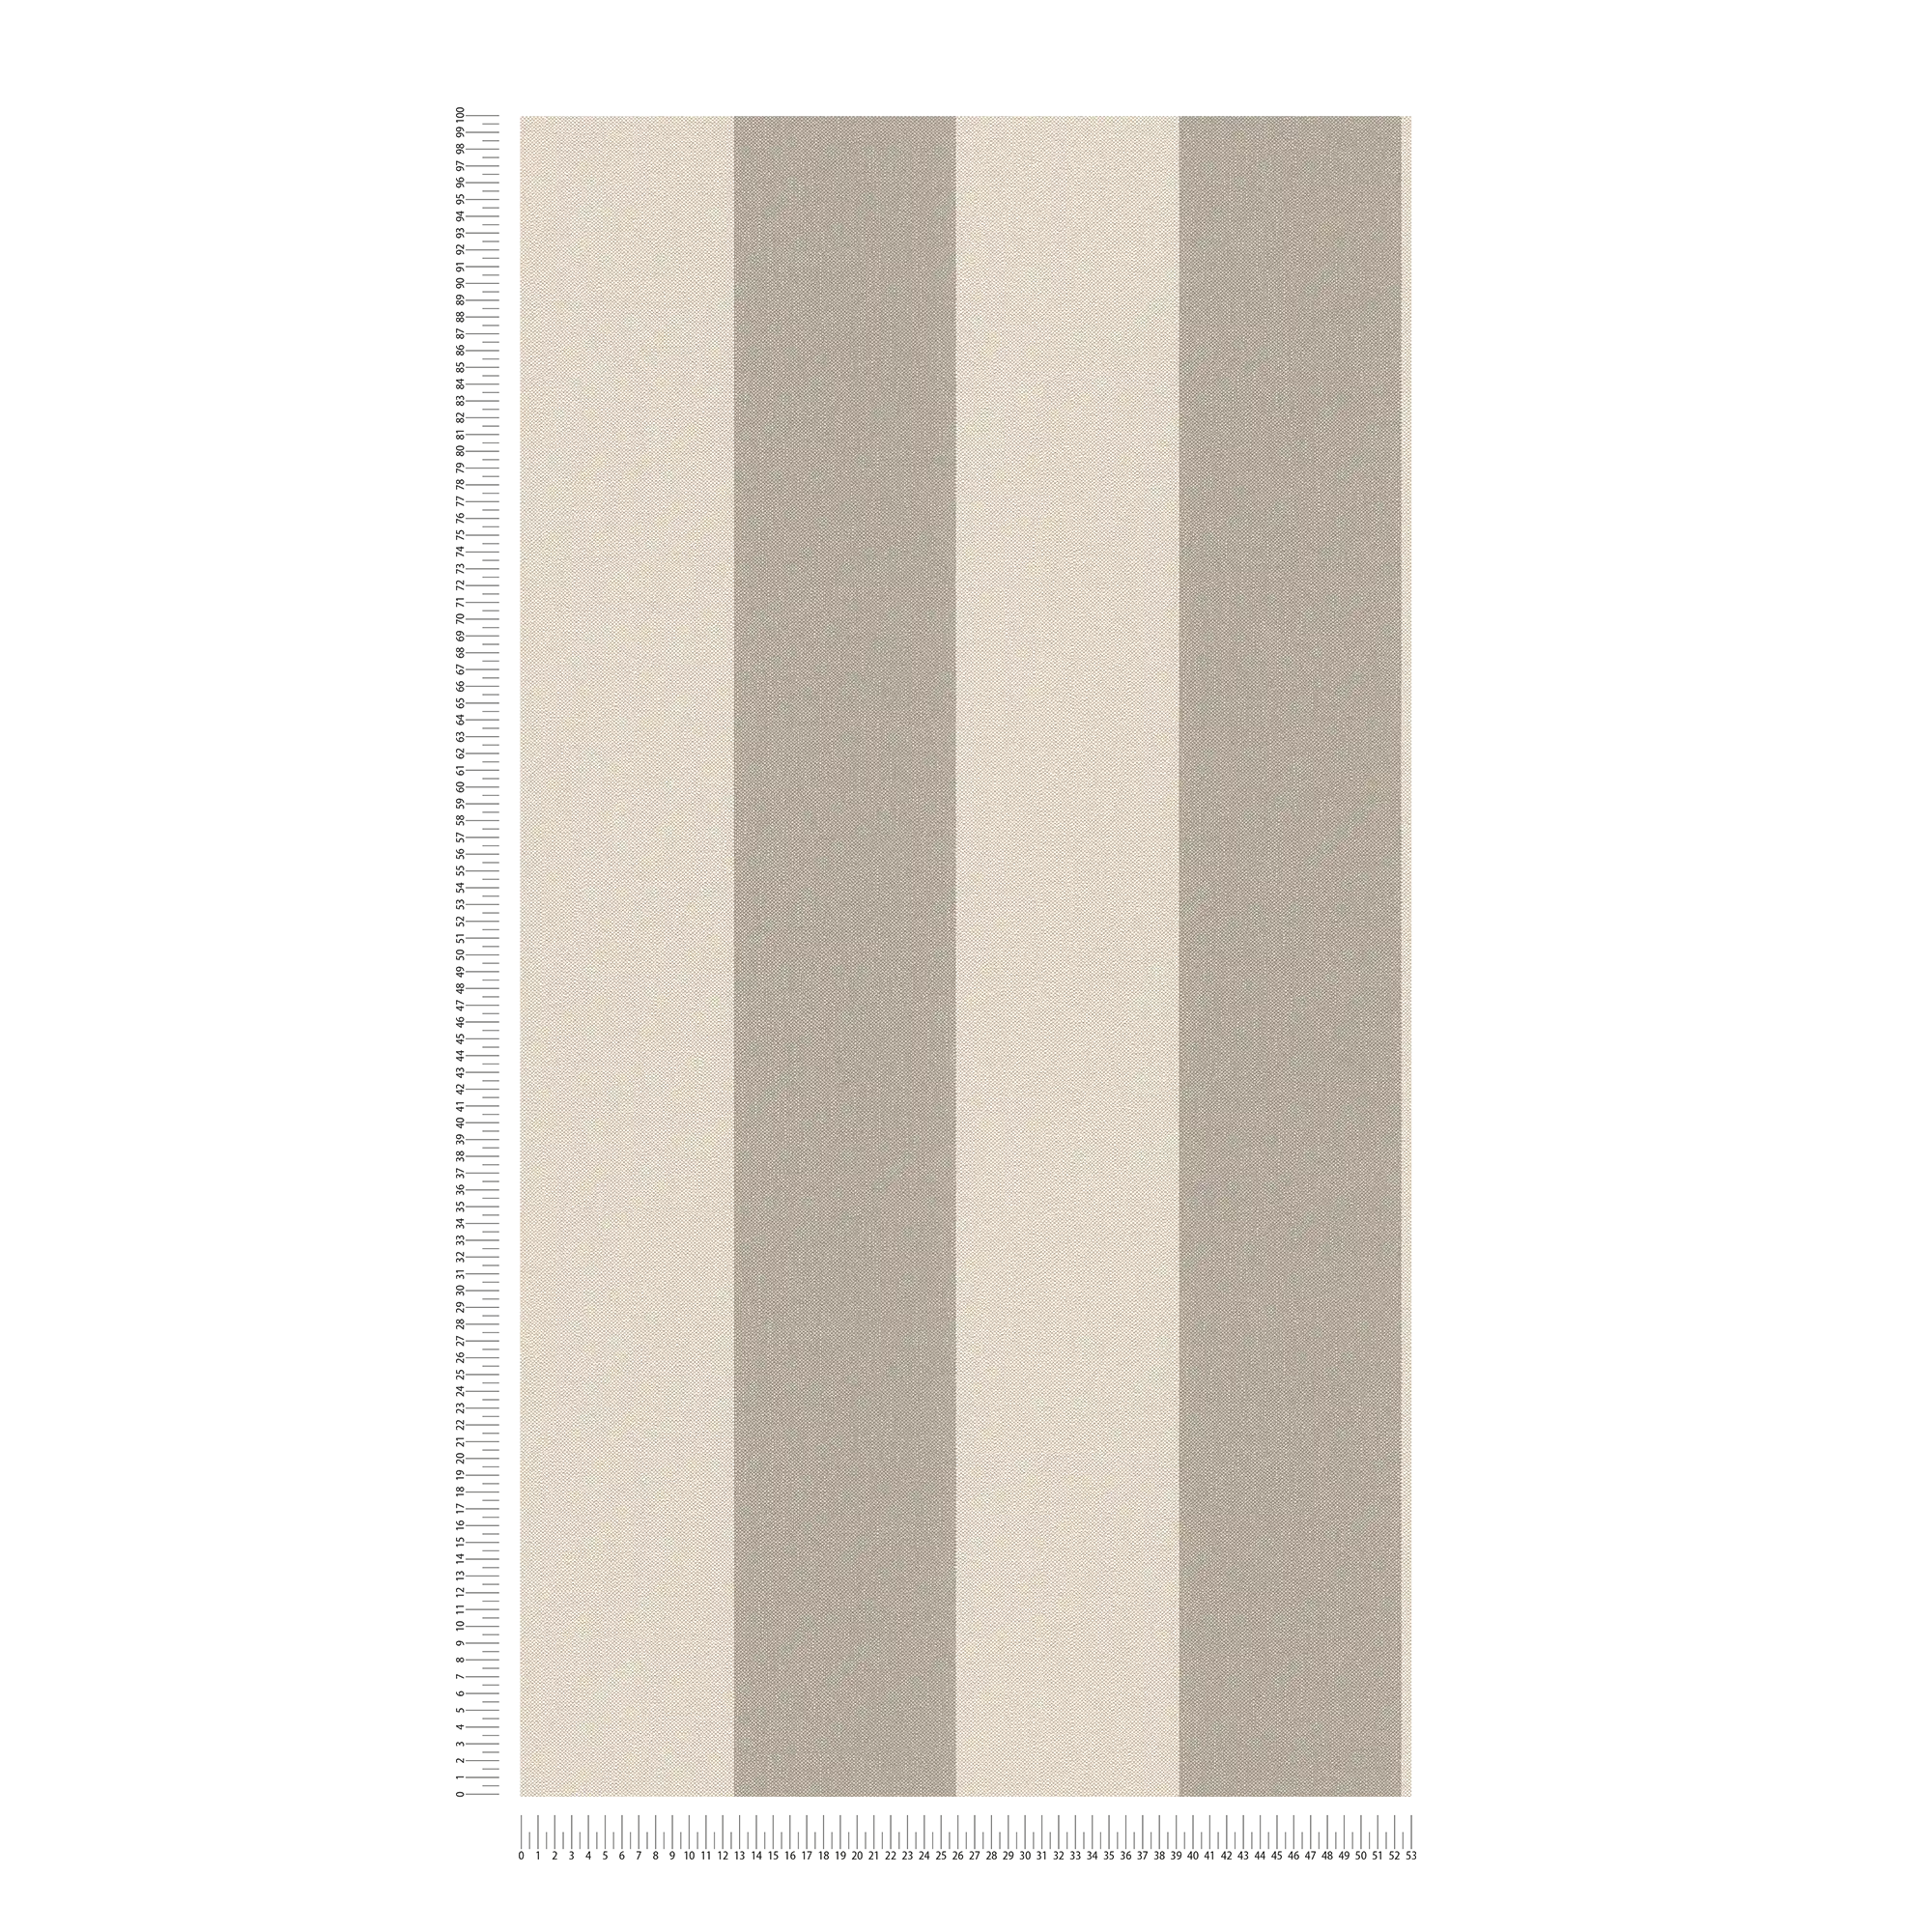             Blockstreifen Tapete mit Textiloptik – Beige, Braun
        